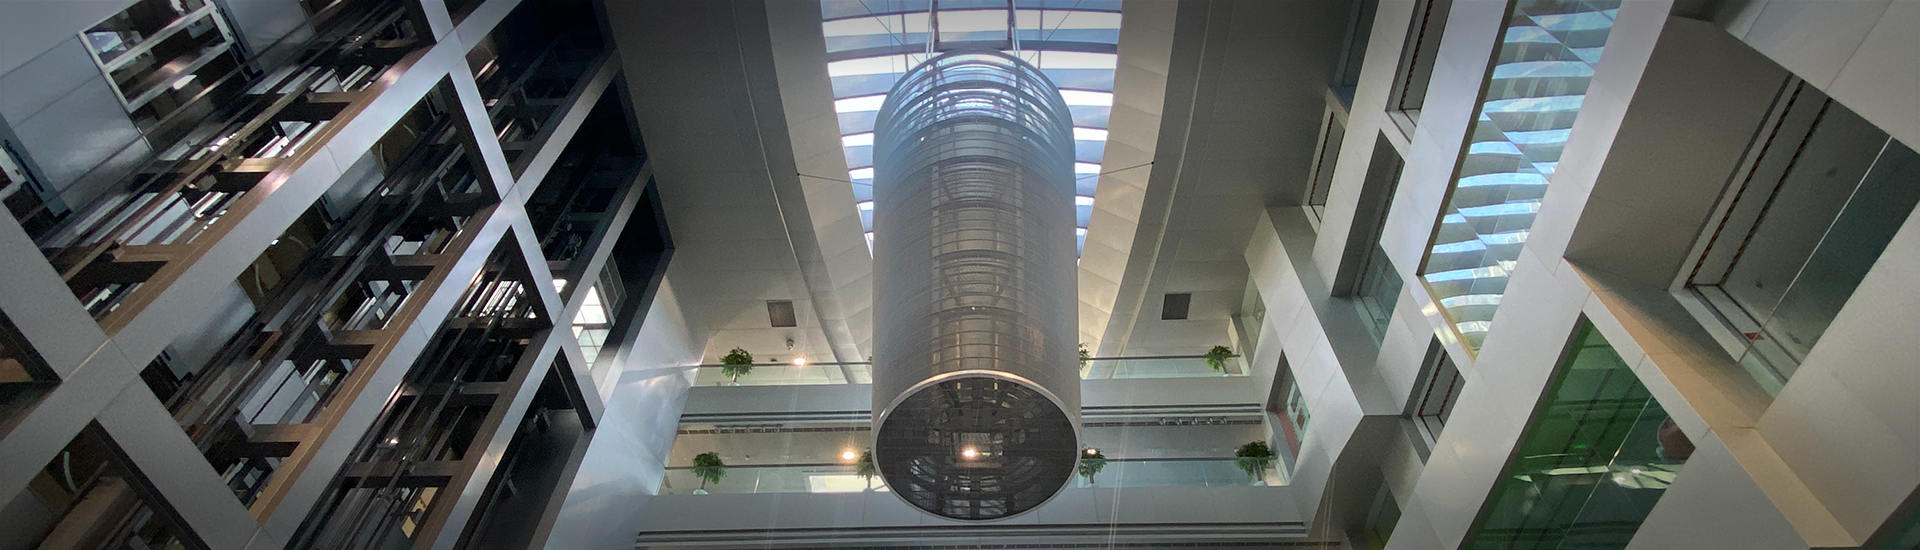 atrium transparent led display